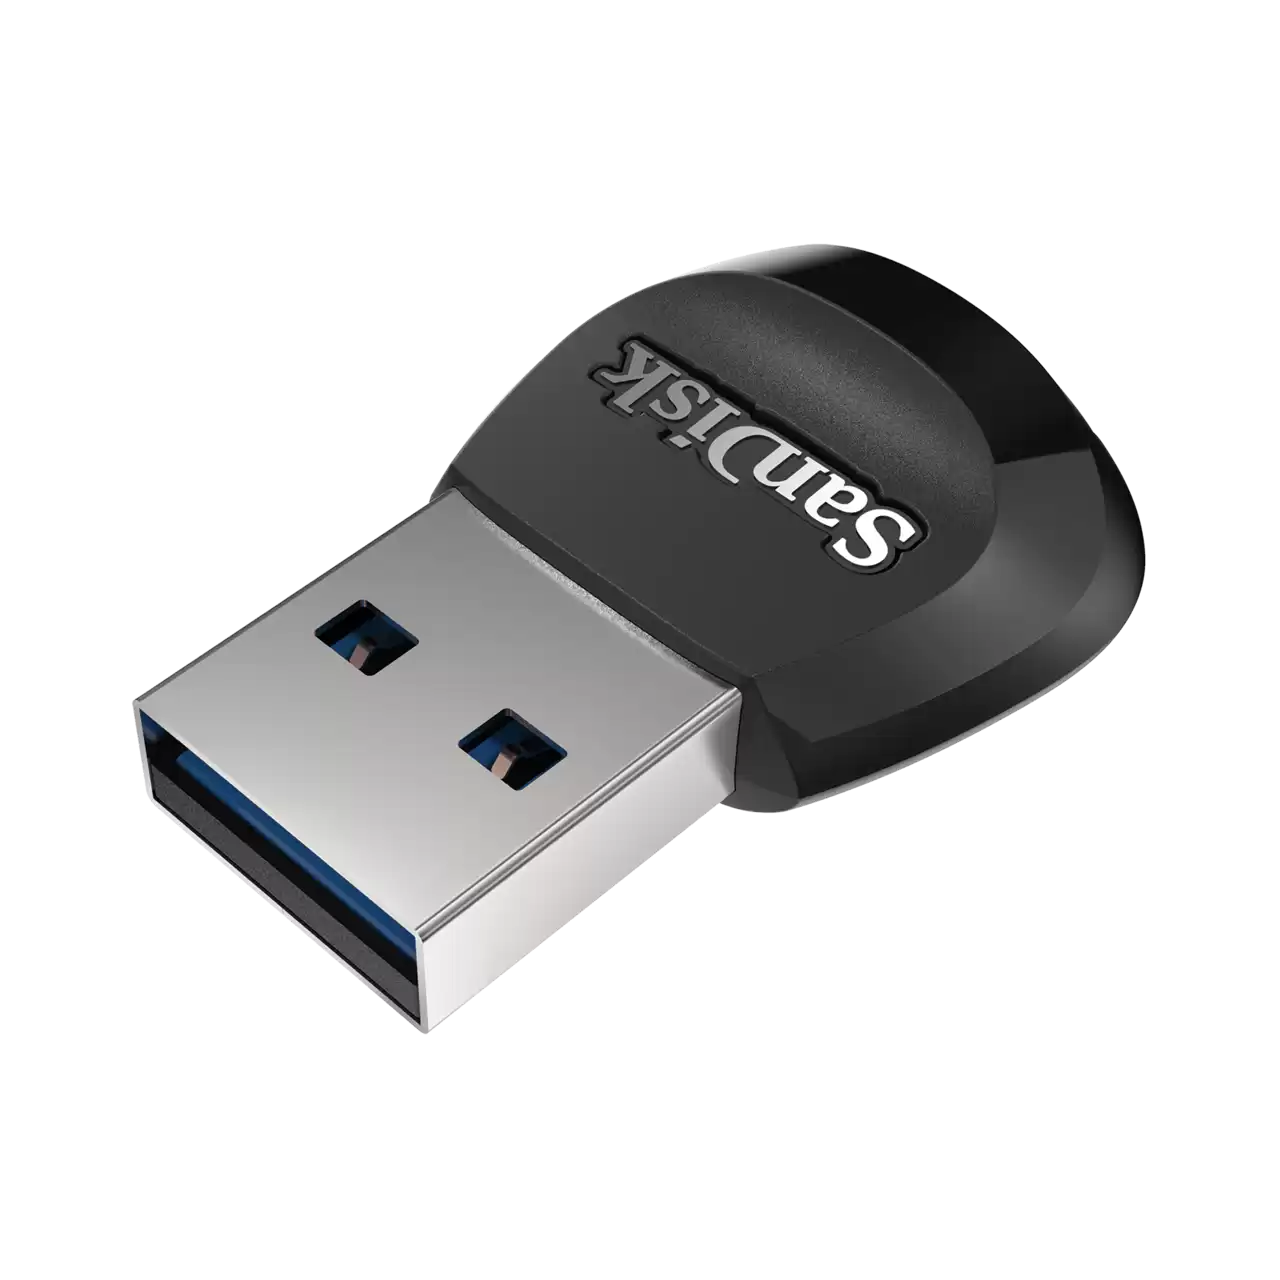   Sandisk MobileMate  microSD USB 3